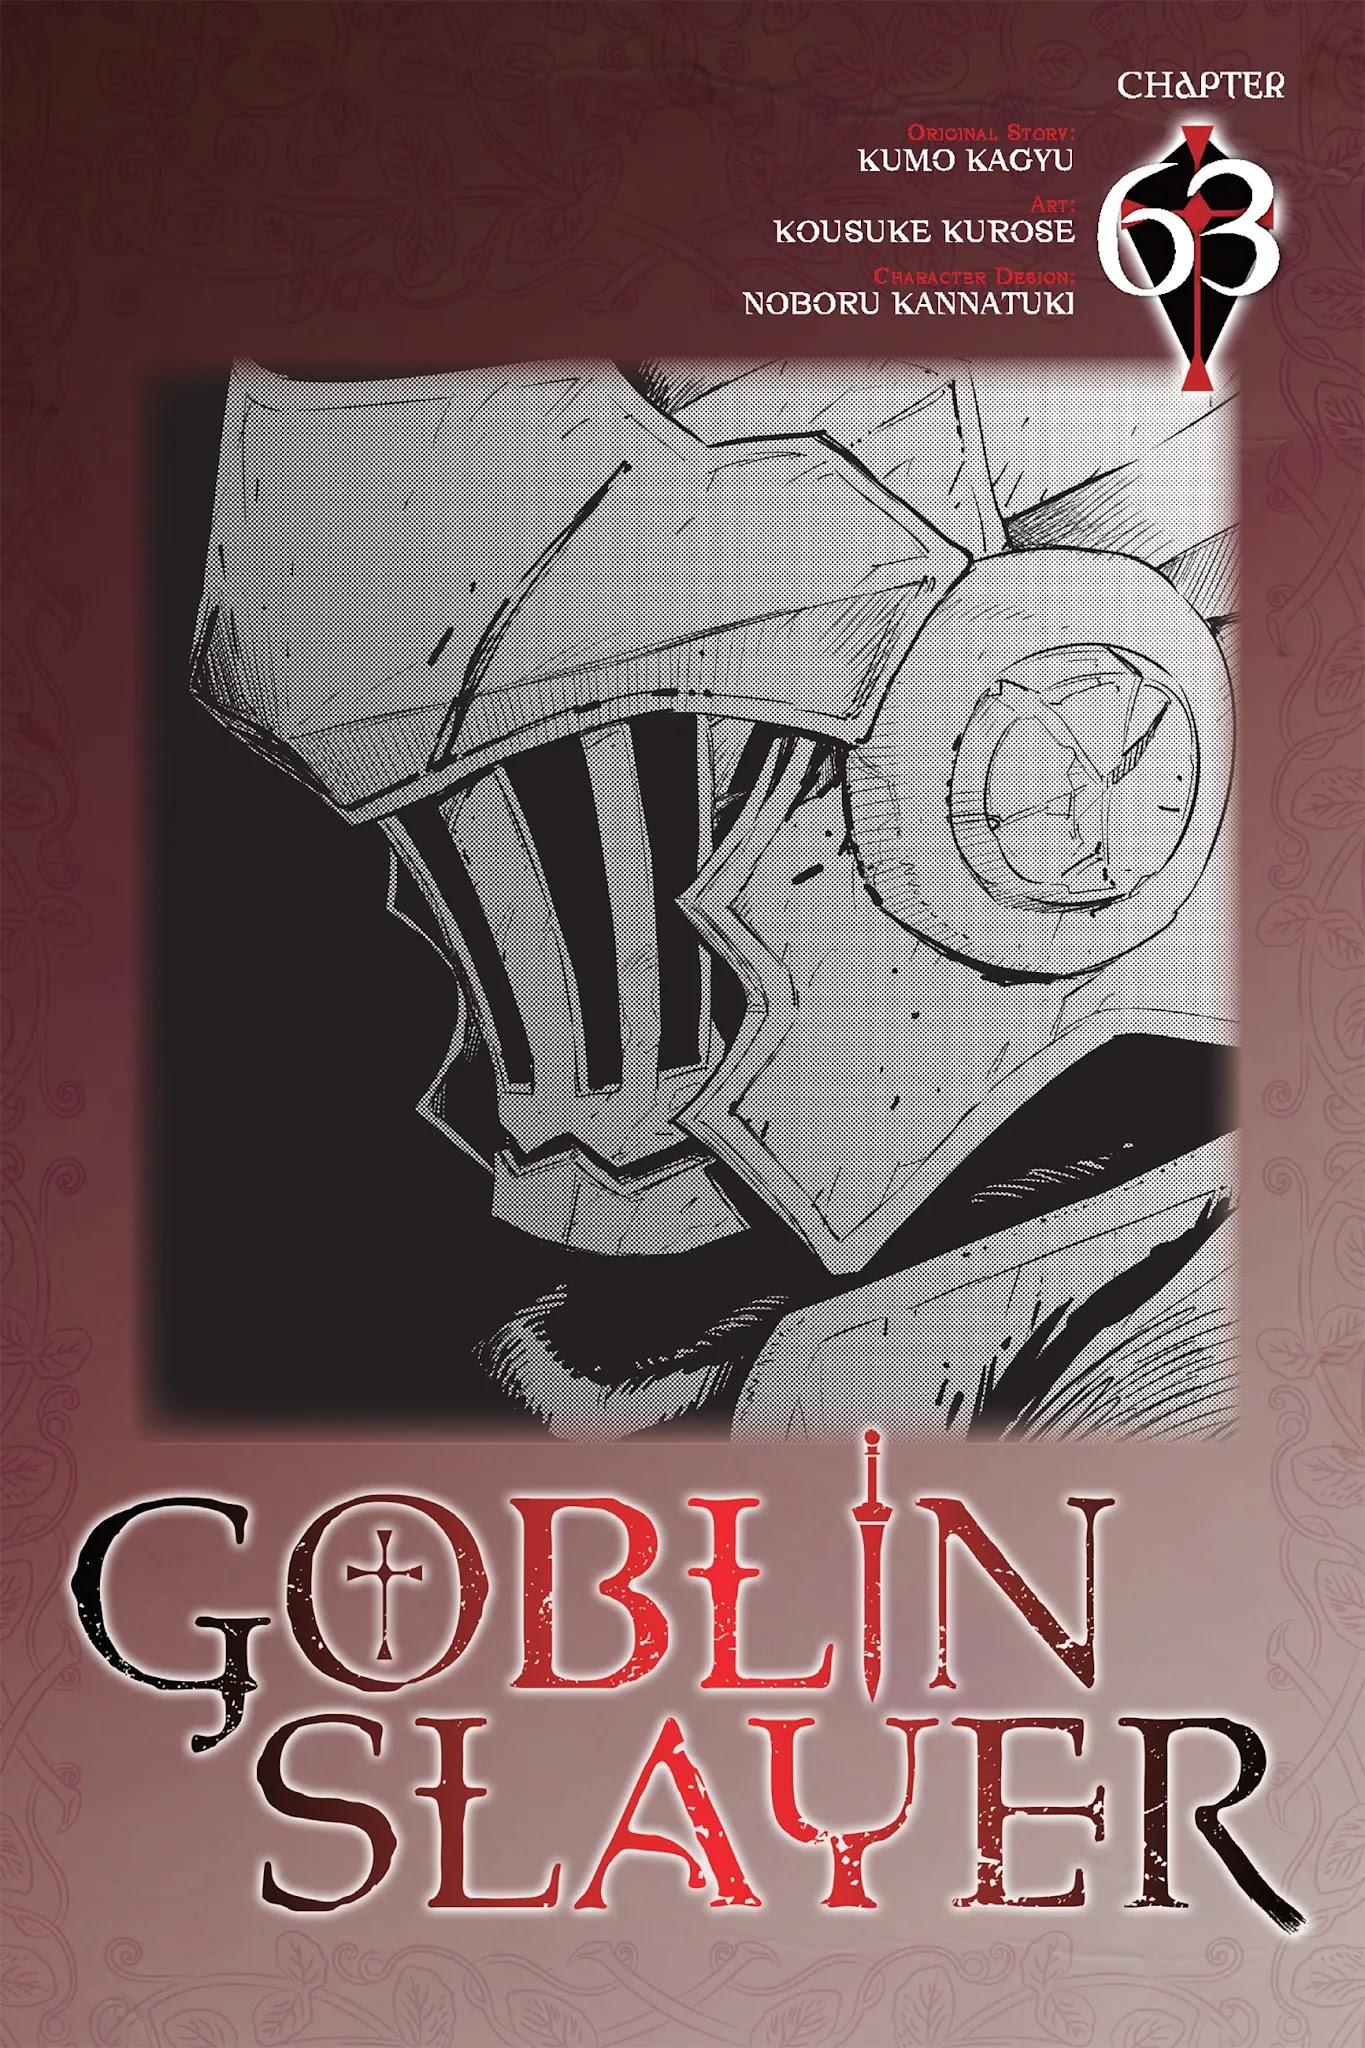 Read Goblin Slayer Chapter 55 on Mangakakalot